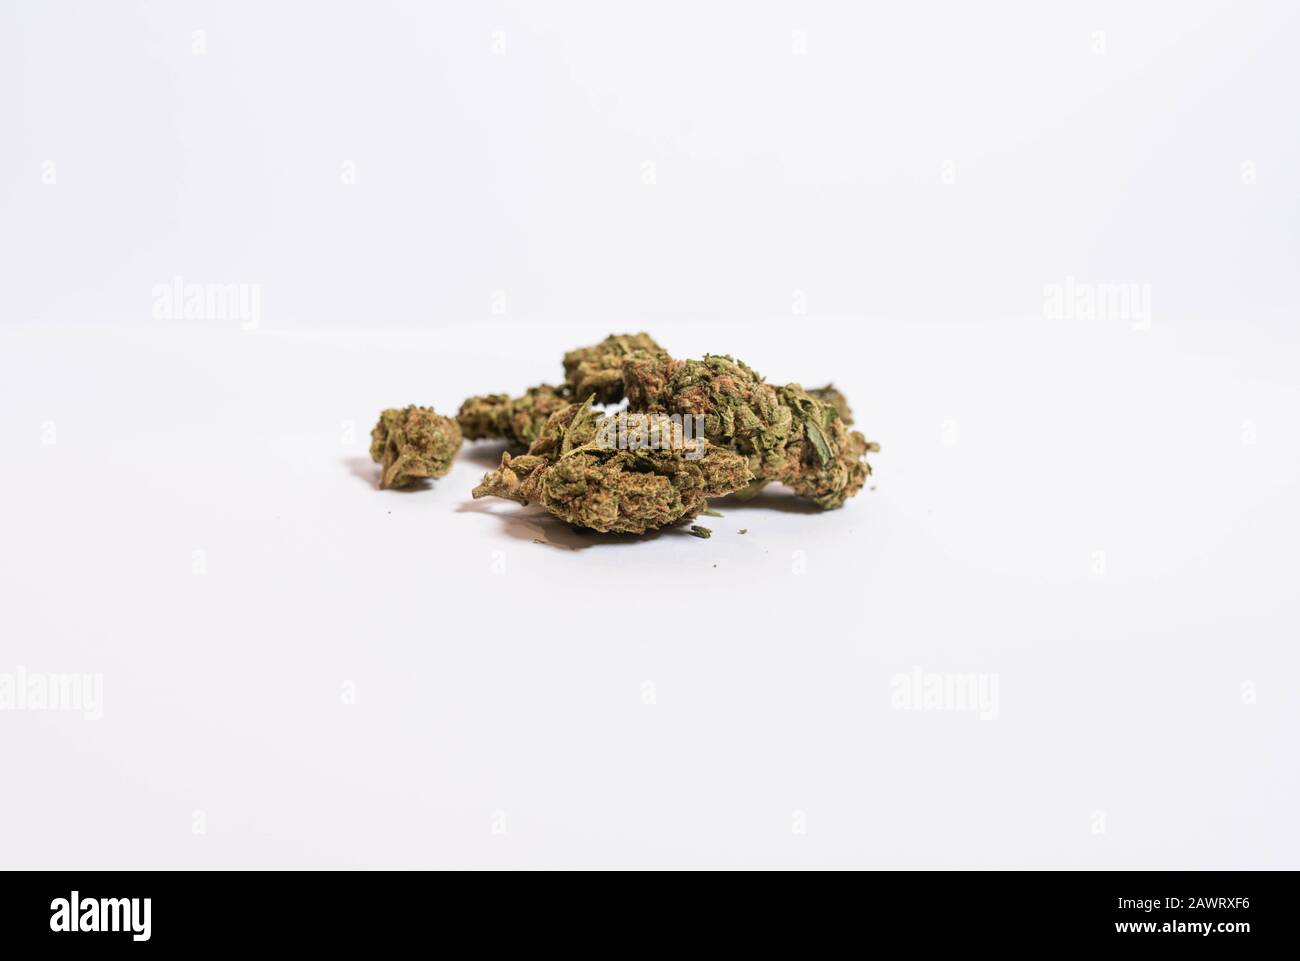 Freshly cured marijuana on soft whitebox background Stock Photo